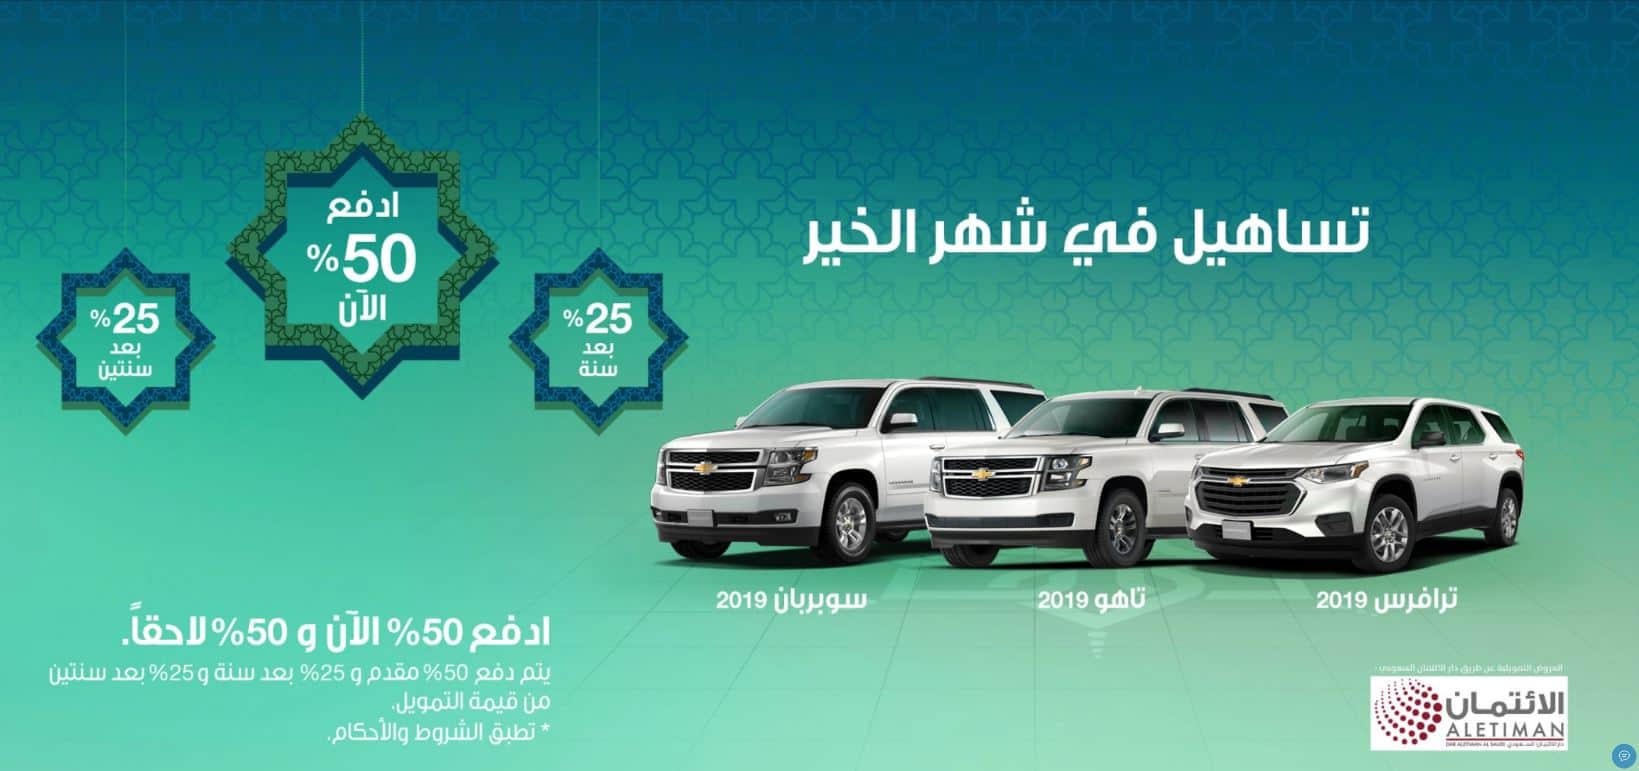 عروض رمضان للسيارات 2019 التوكيلات العالمية تساهيل شيفرولية